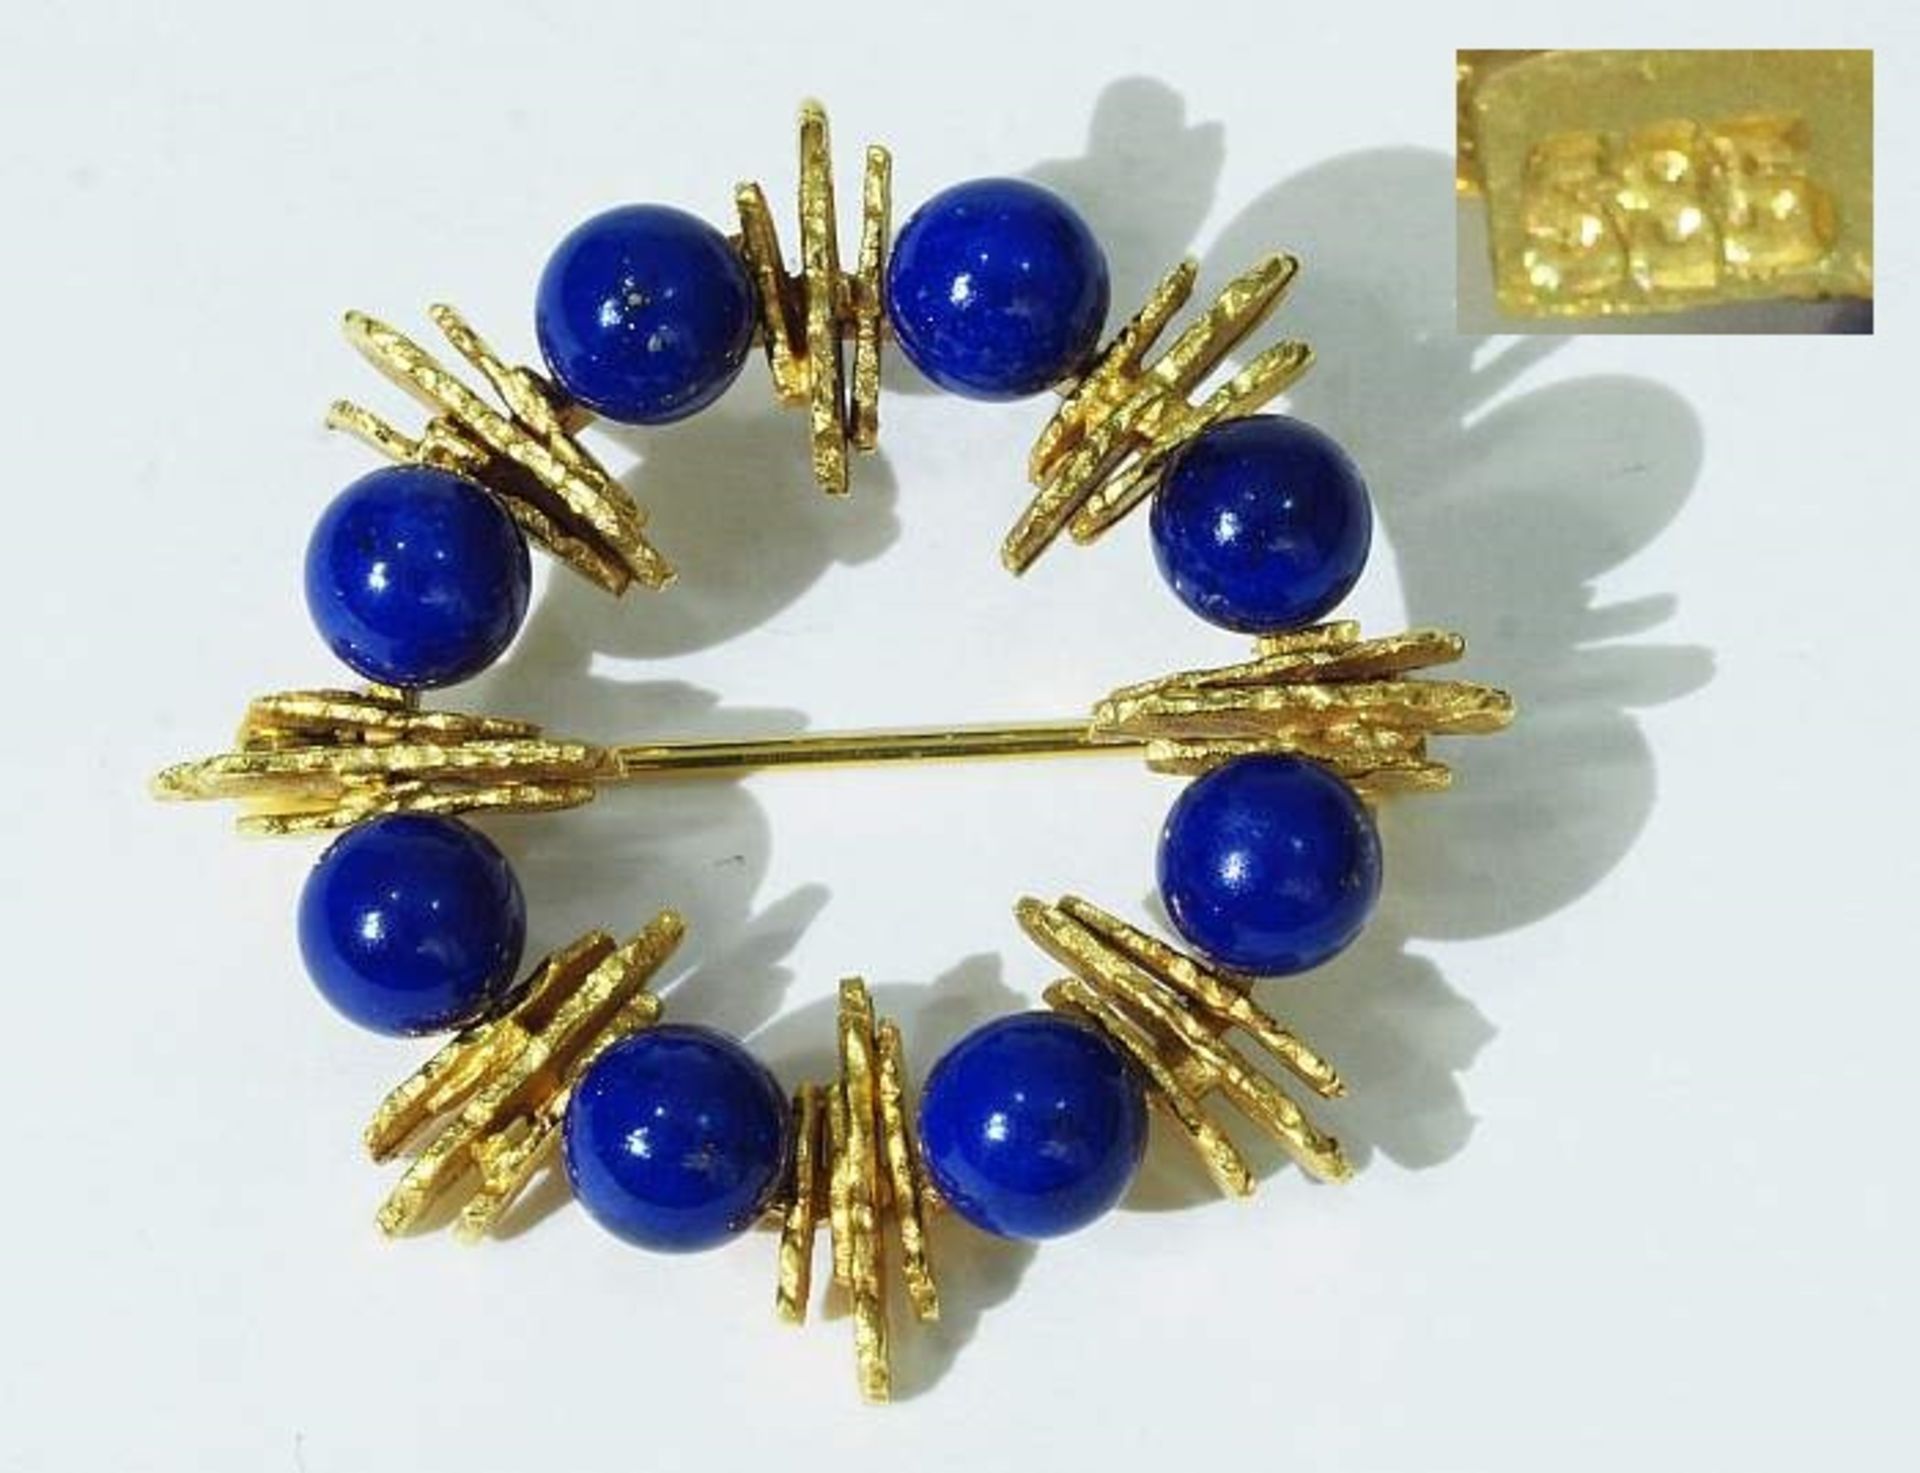 Brosche mit Lapis Lazuli Perlen. Brosche mit Lapis Lazuli Perlen. Kranzförmige Fassung aus 585er